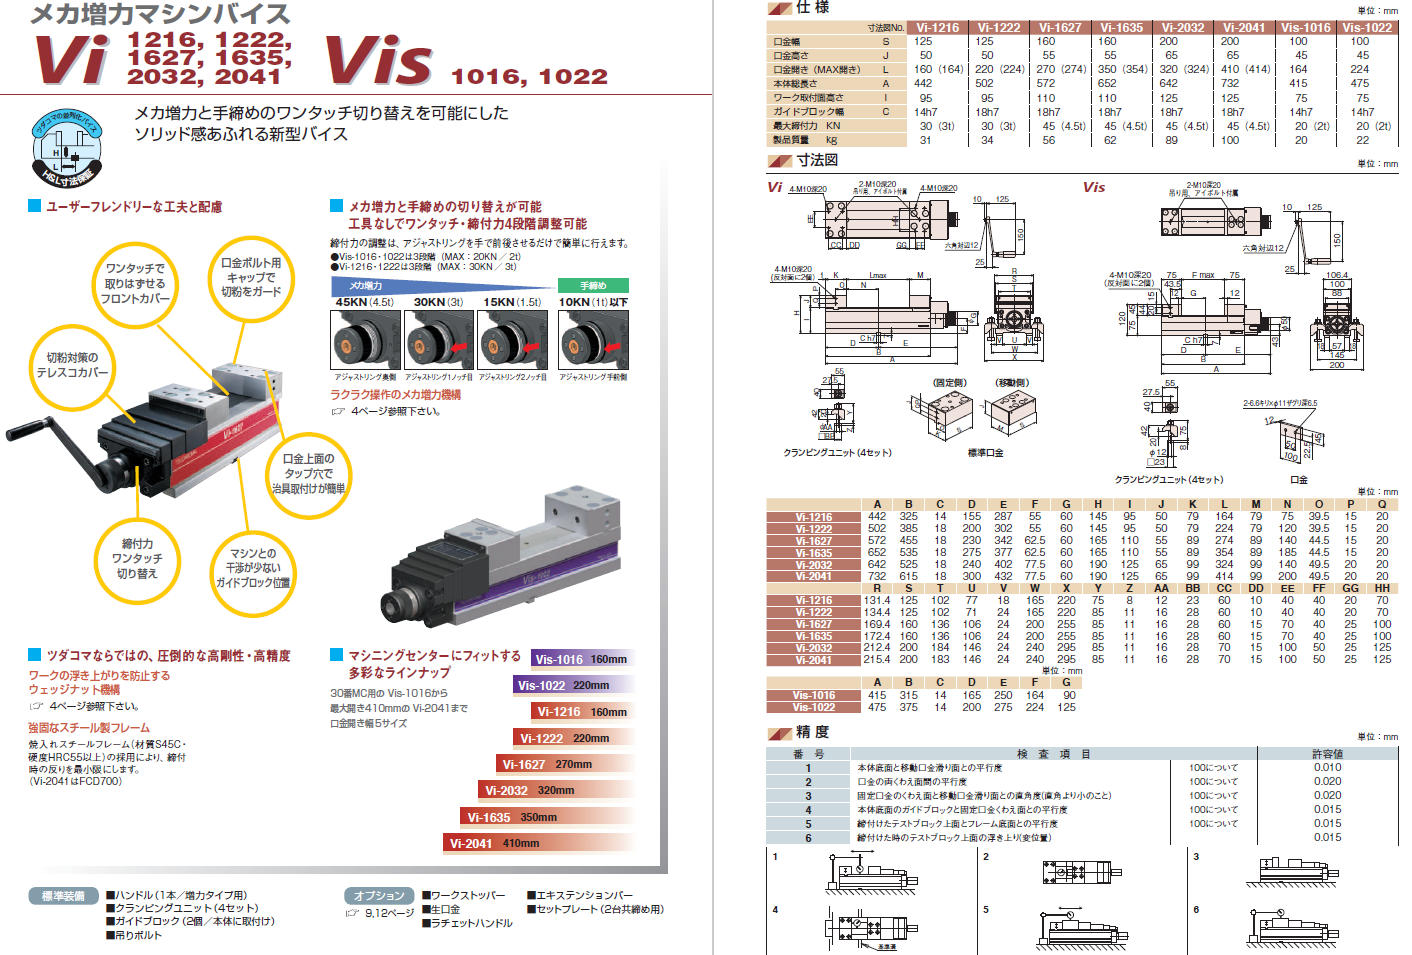 よいしな Vis/Vi/VH共通 ｴｷｽﾃﾝｼｮﾝﾊﾞｰ 津田駒工業㈱ ﾂﾀﾞｺﾏ